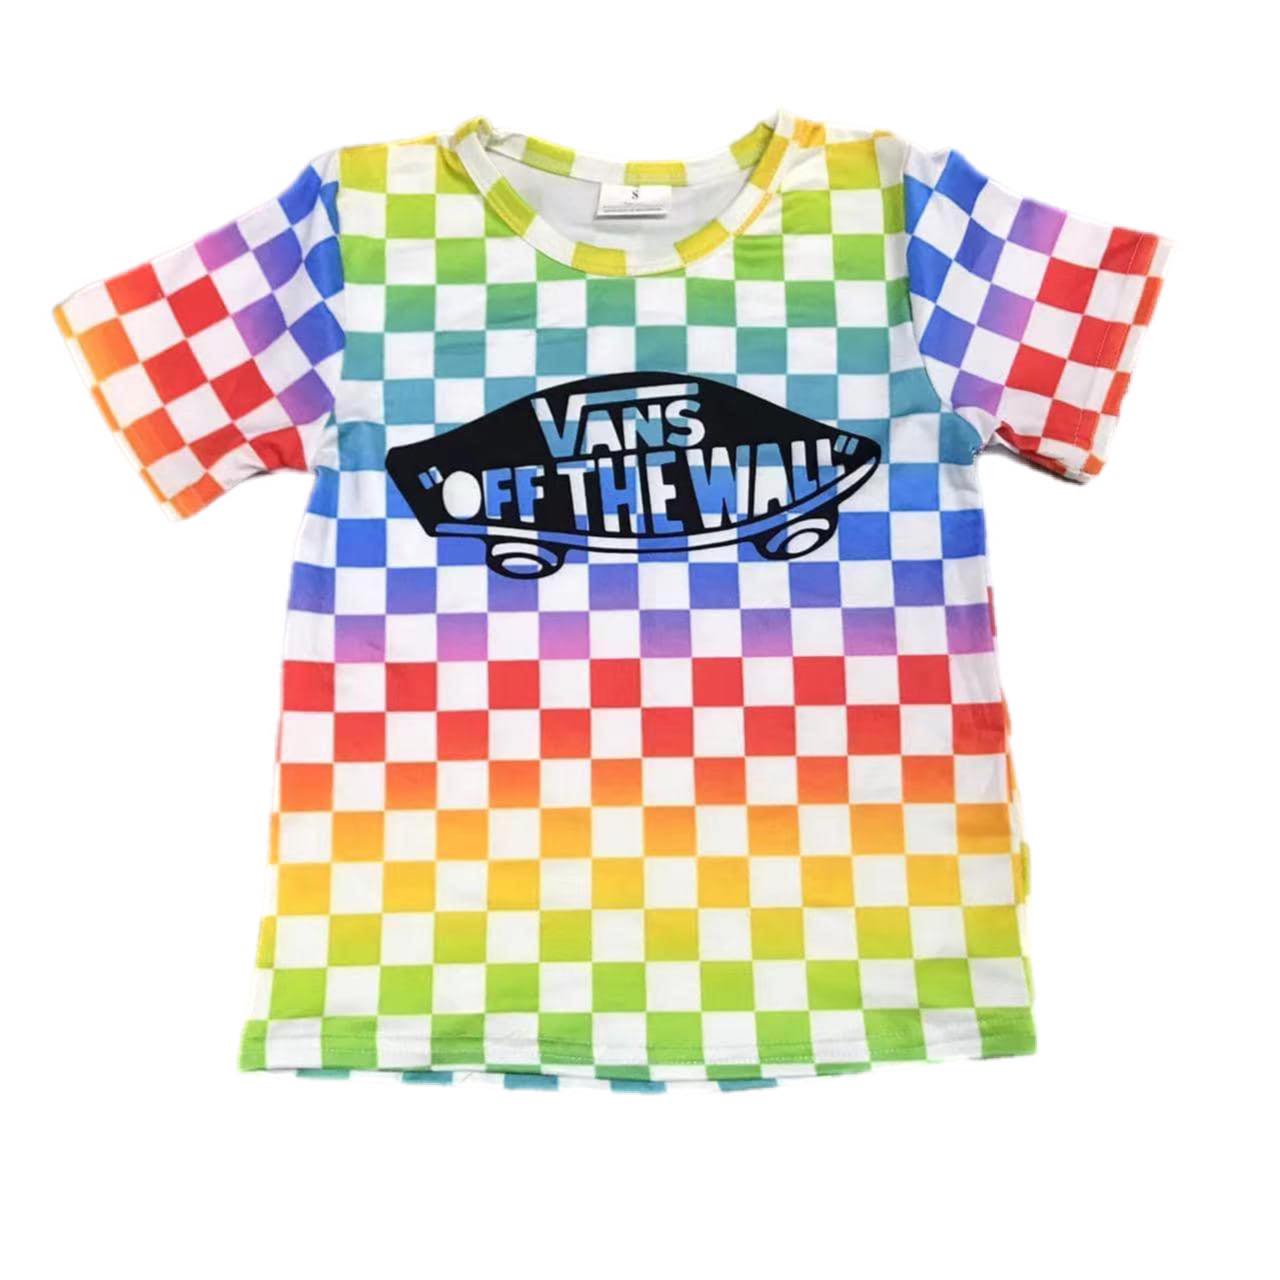 ᴡᴇᴇᴋʟʏ ᴘʀᴇ ᴏʀᴅᴇʀ Cool Kid Shirt